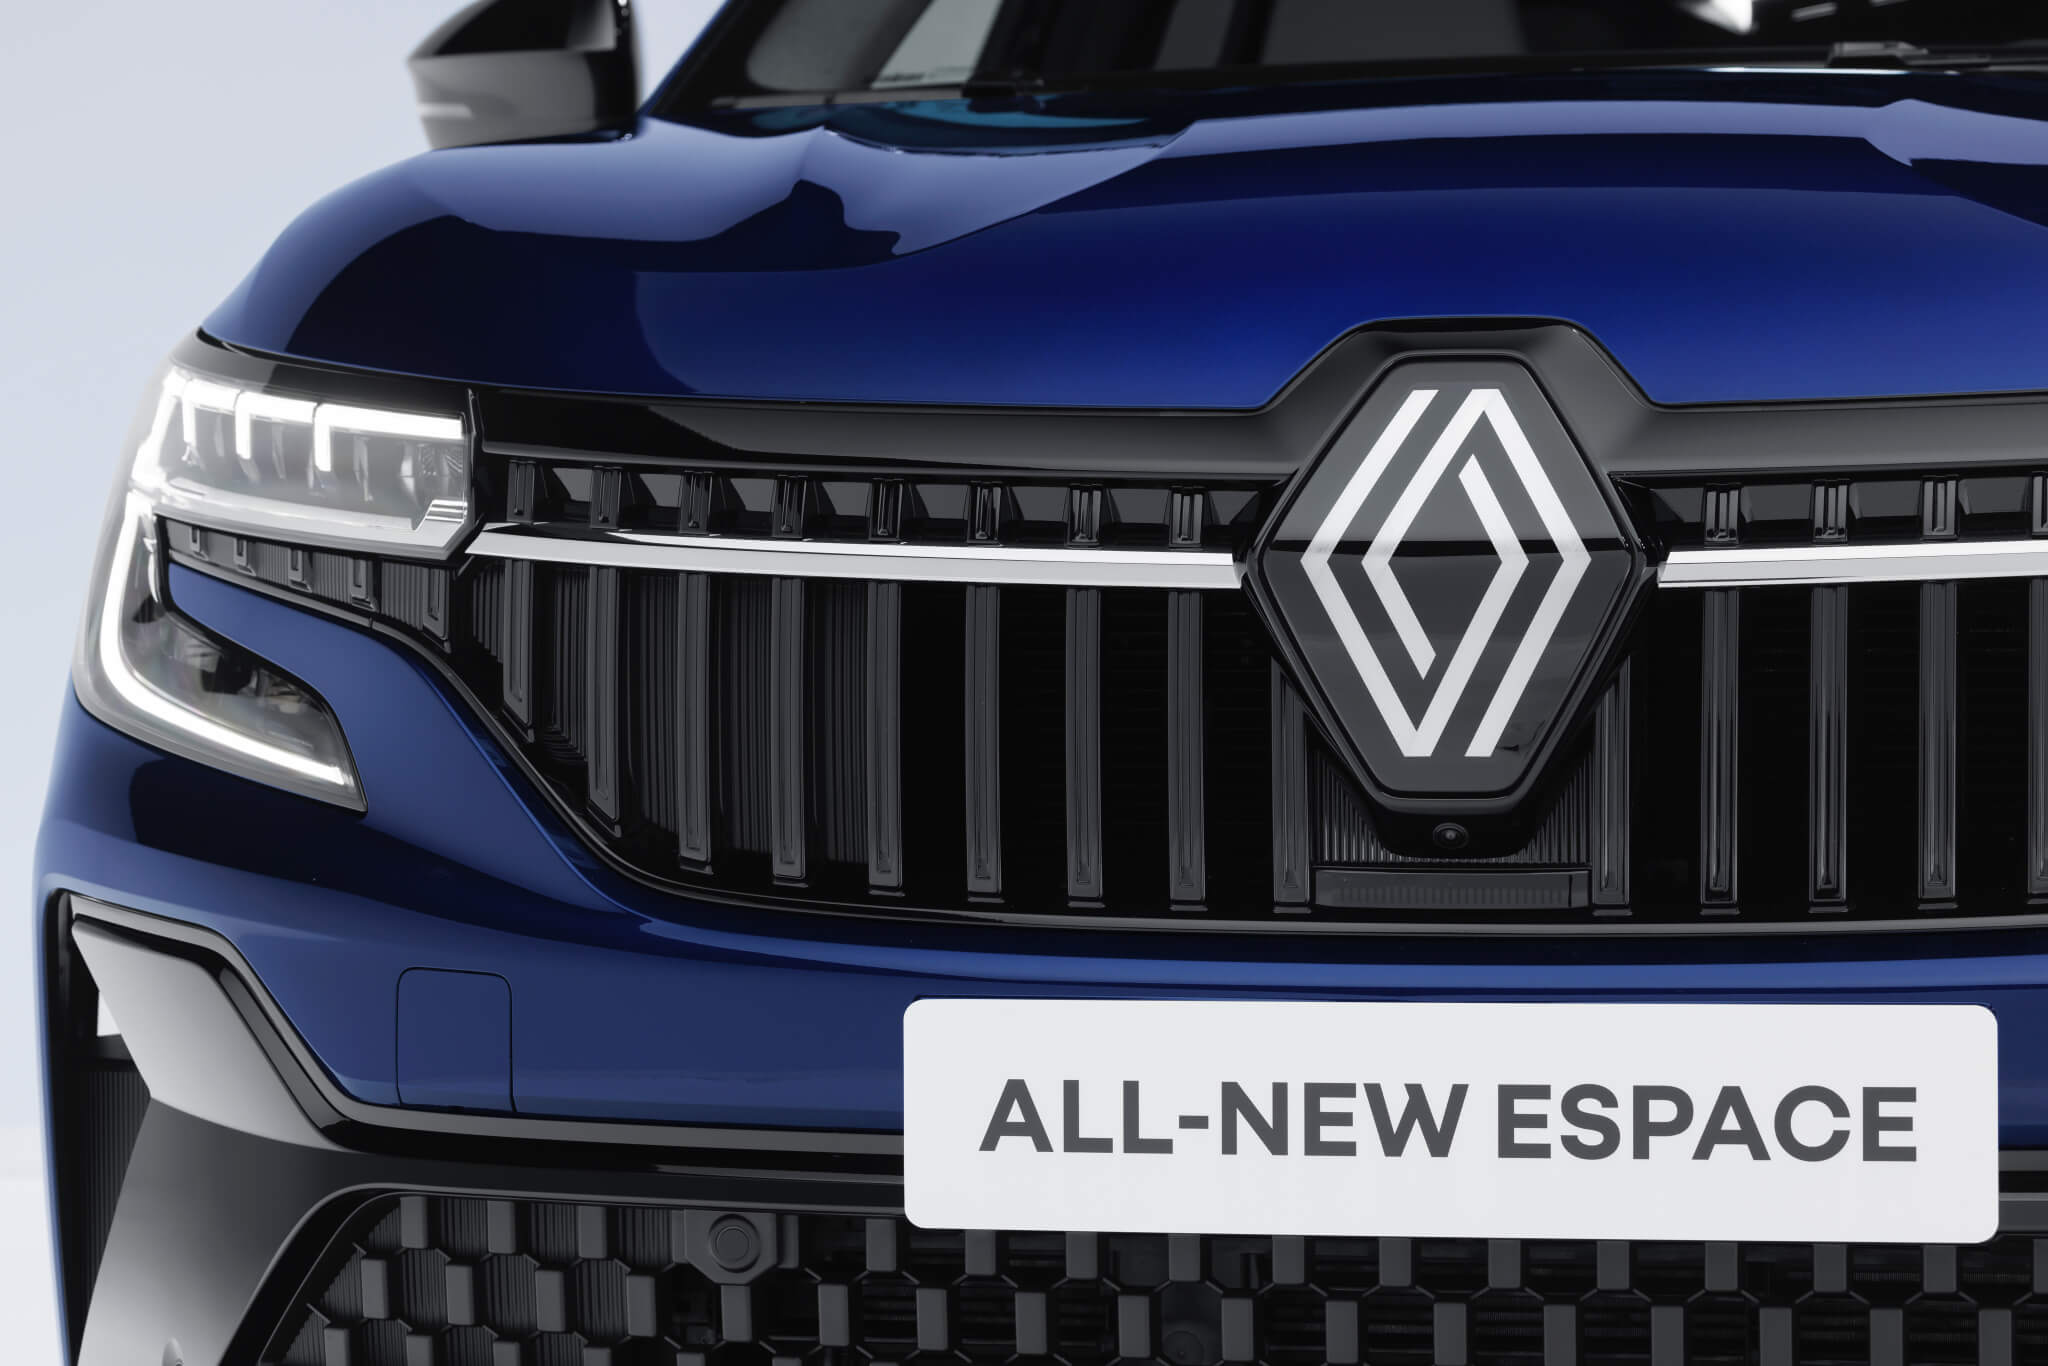 Novo Renault Espace 2023 grelha